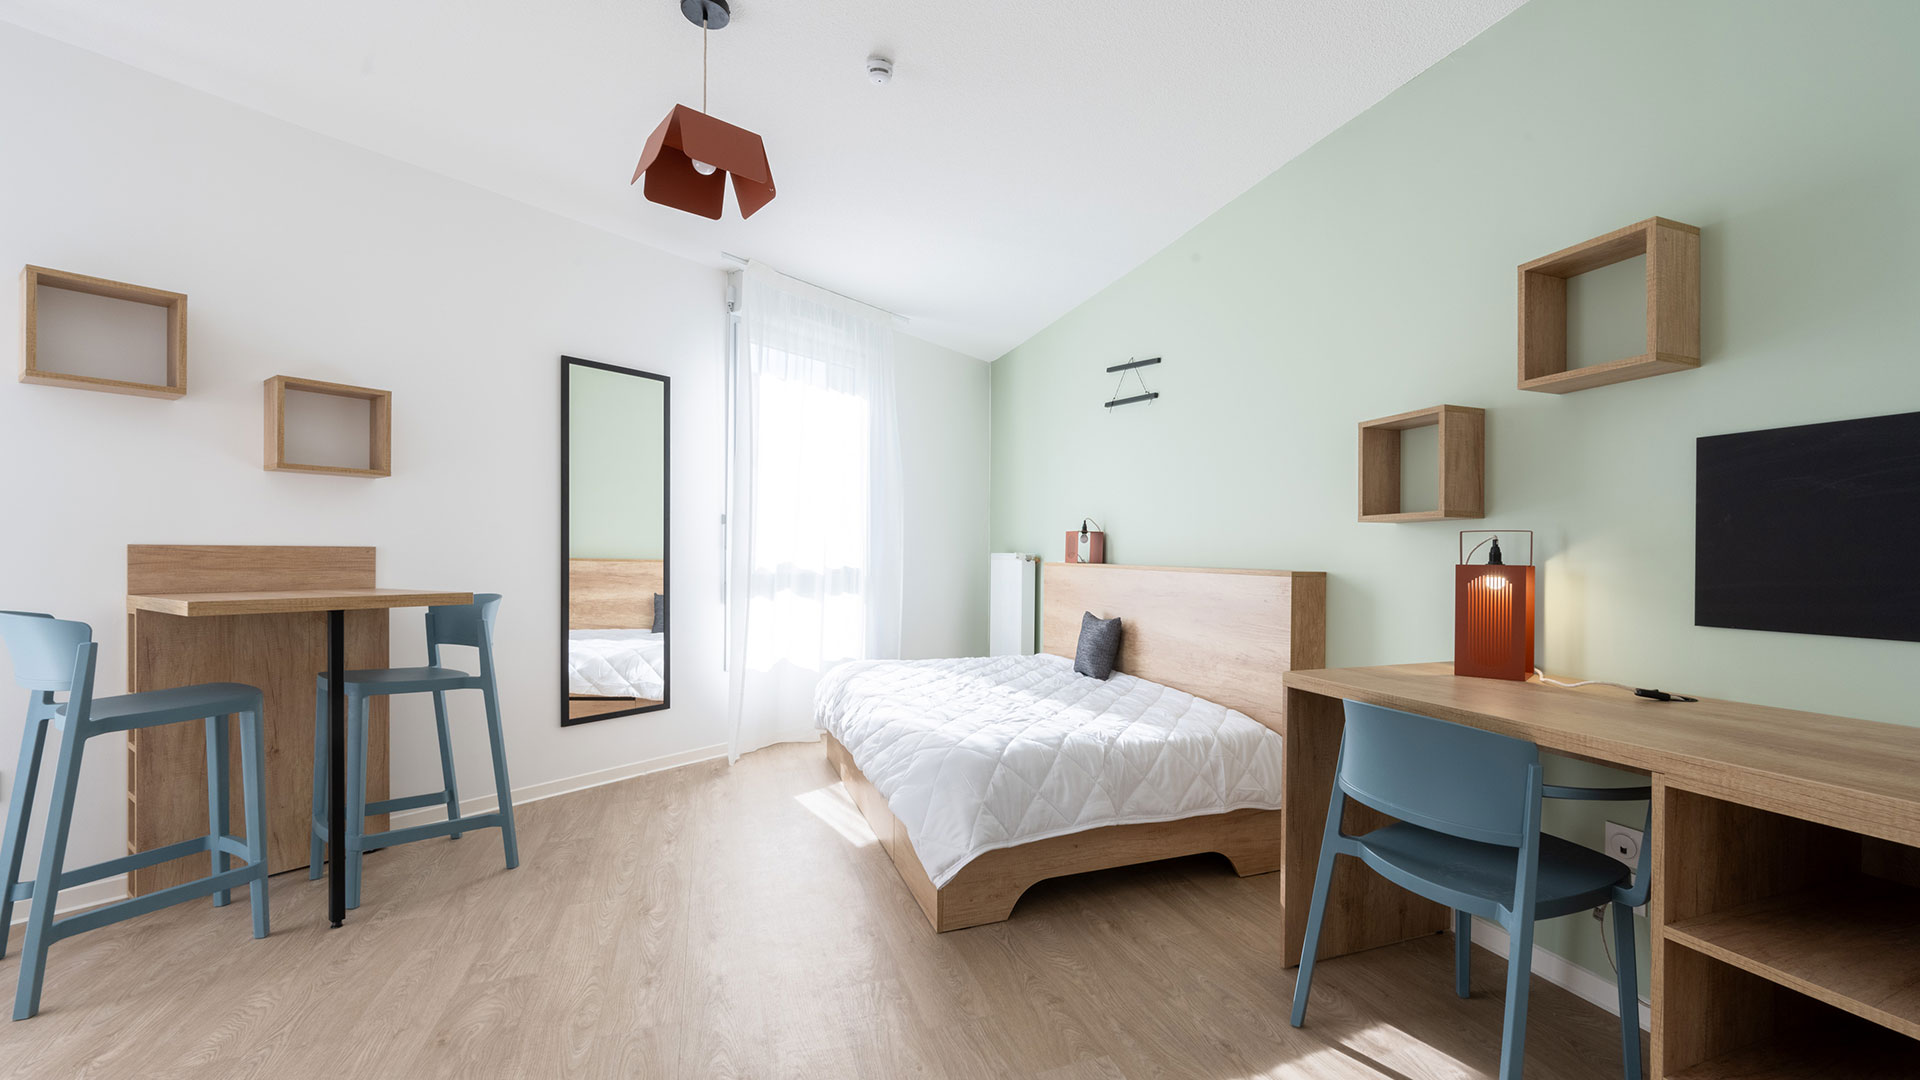 Appartement étudiant meublé et équipé dans résidence avec services à La Rochelle.